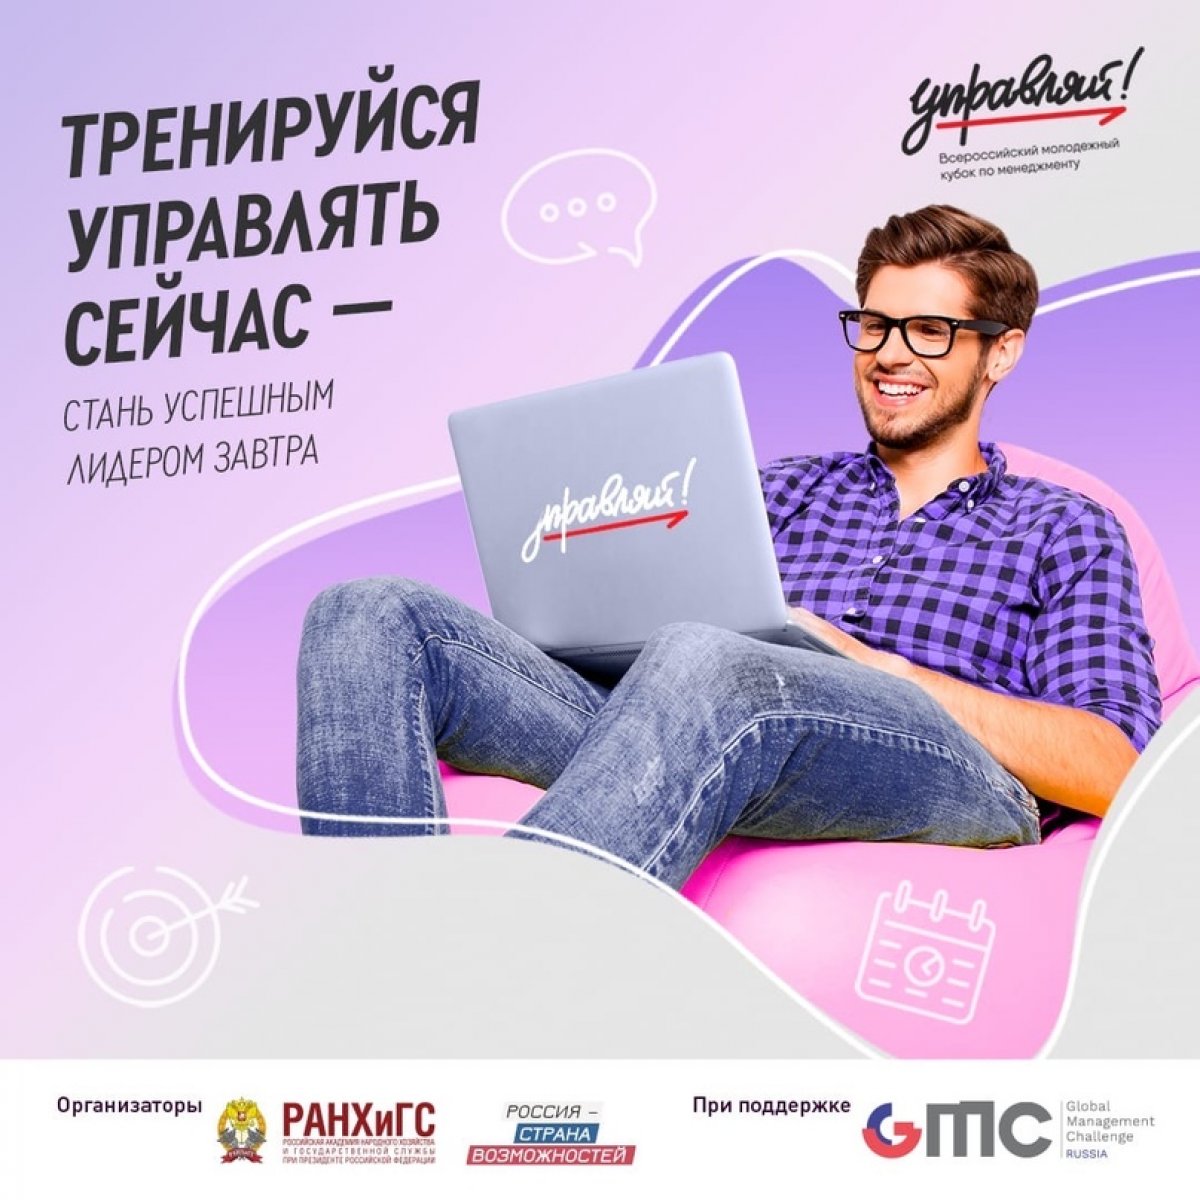 📢 Спеши подать заявку на участие в Всероссийском молодежном кубке по менеджменту «Управляй!»